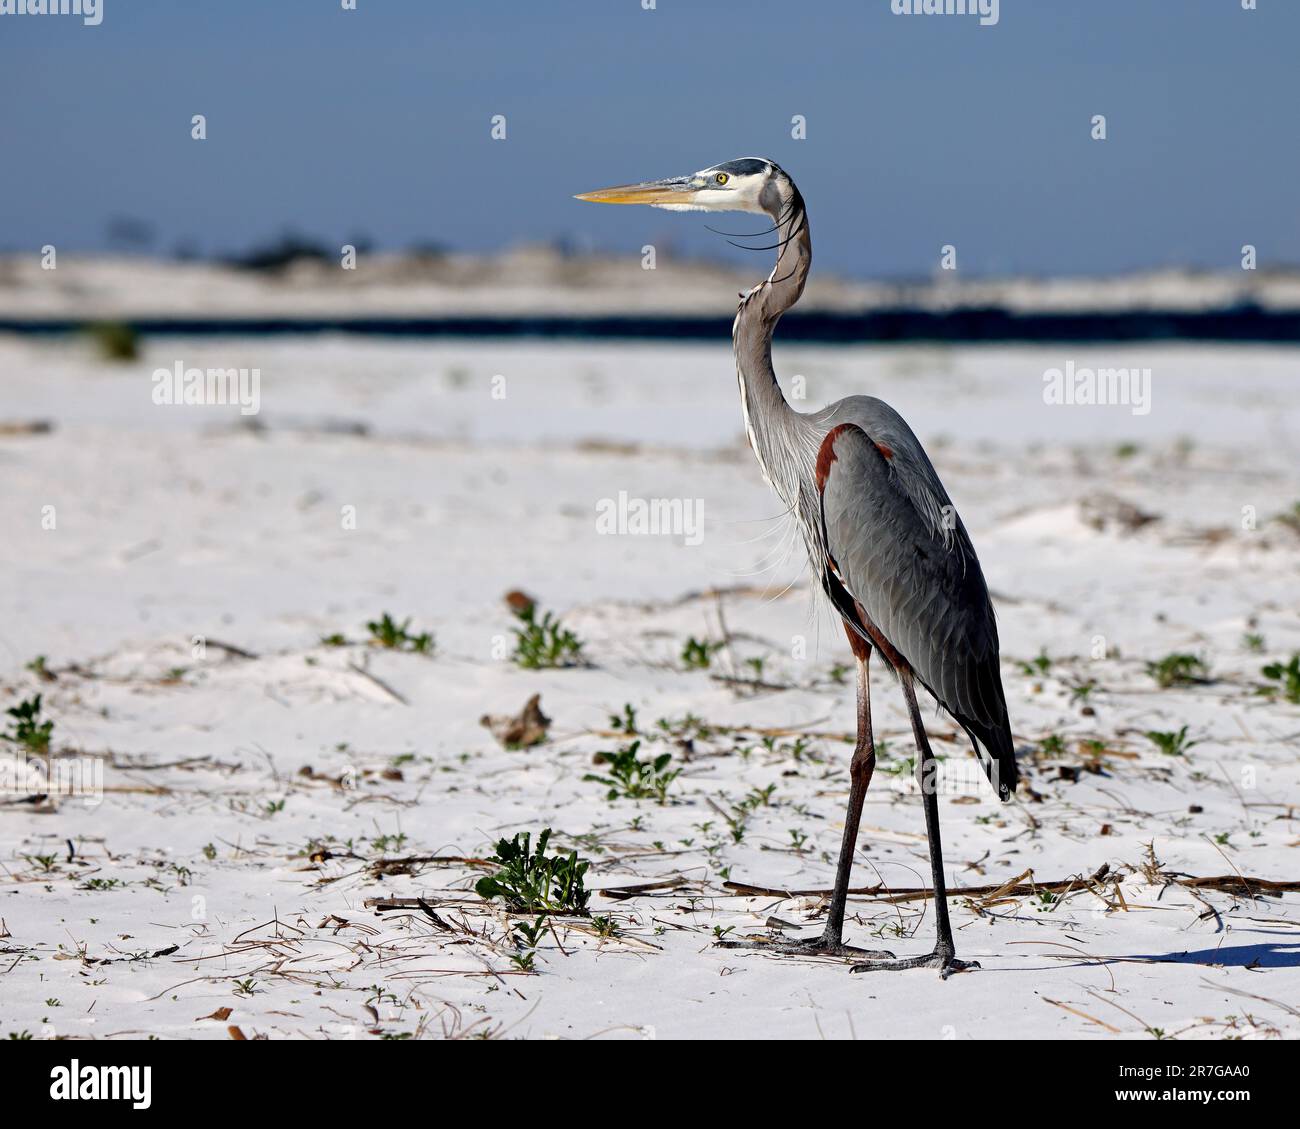 Una gran garza azul de pie en la arena de la playa en la vista de perfil Foto de stock